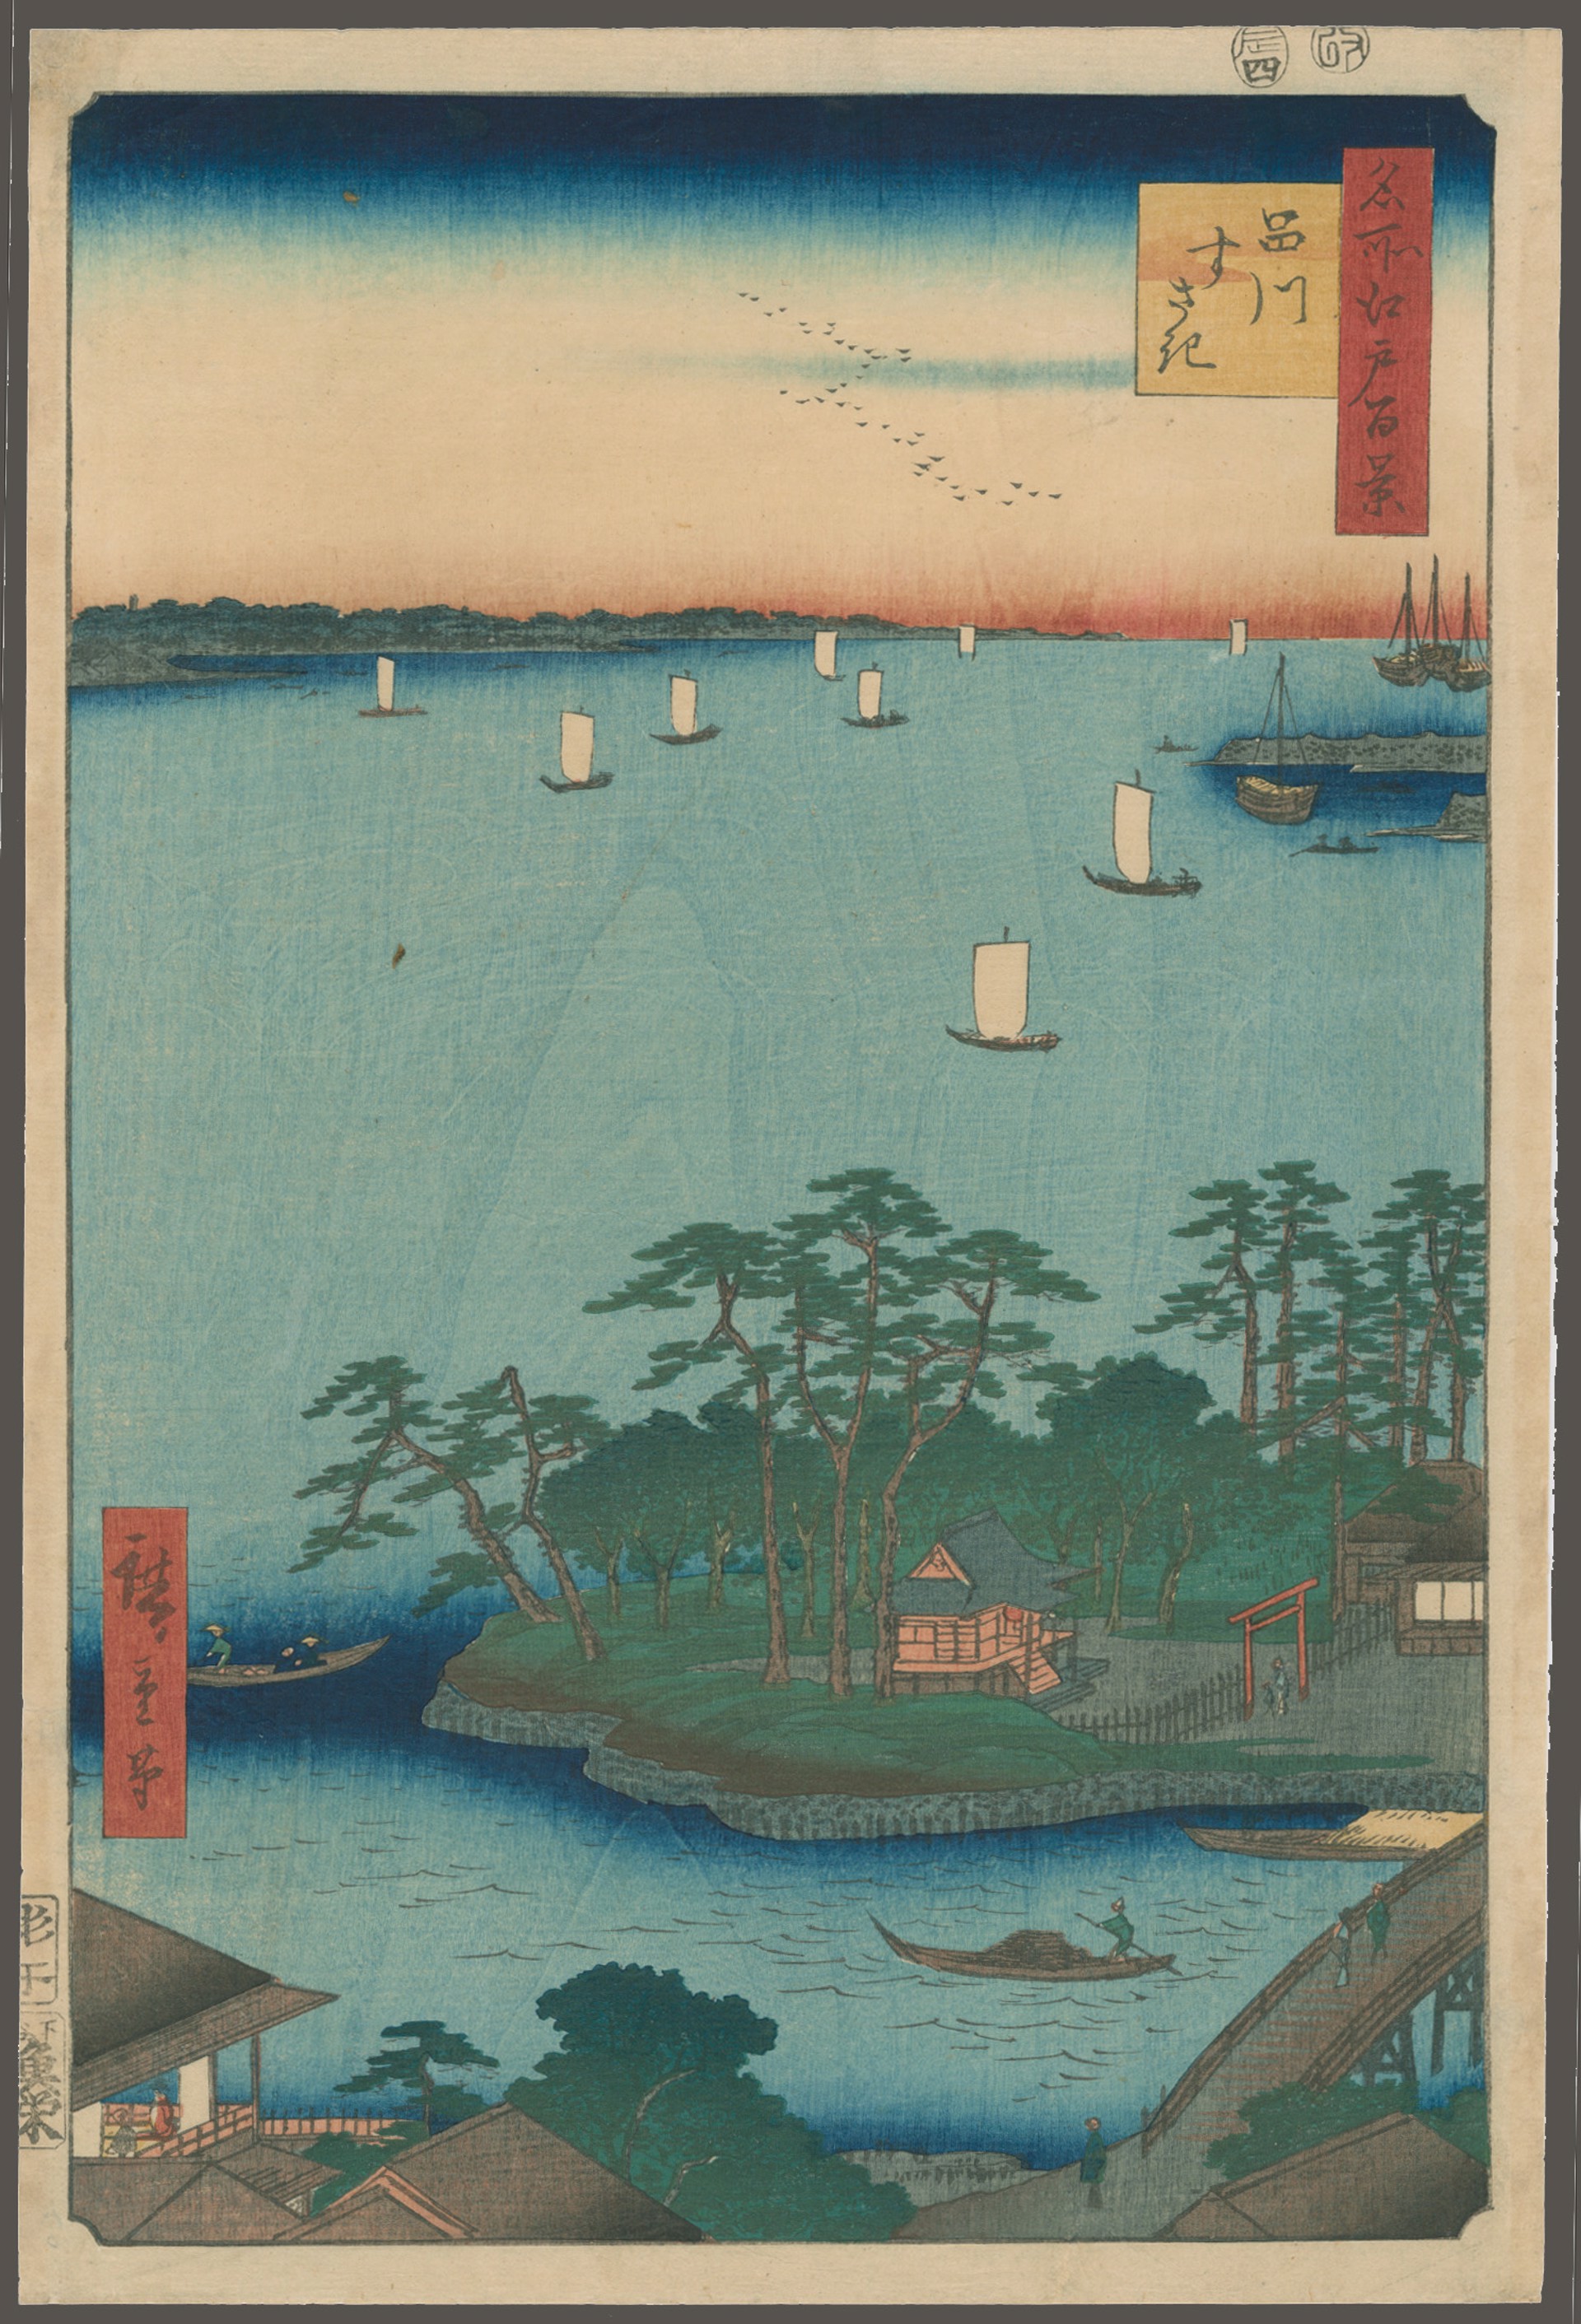 #83 Suzaki Sandbank at Shinagawa 100 Views of Edo by Hiroshige